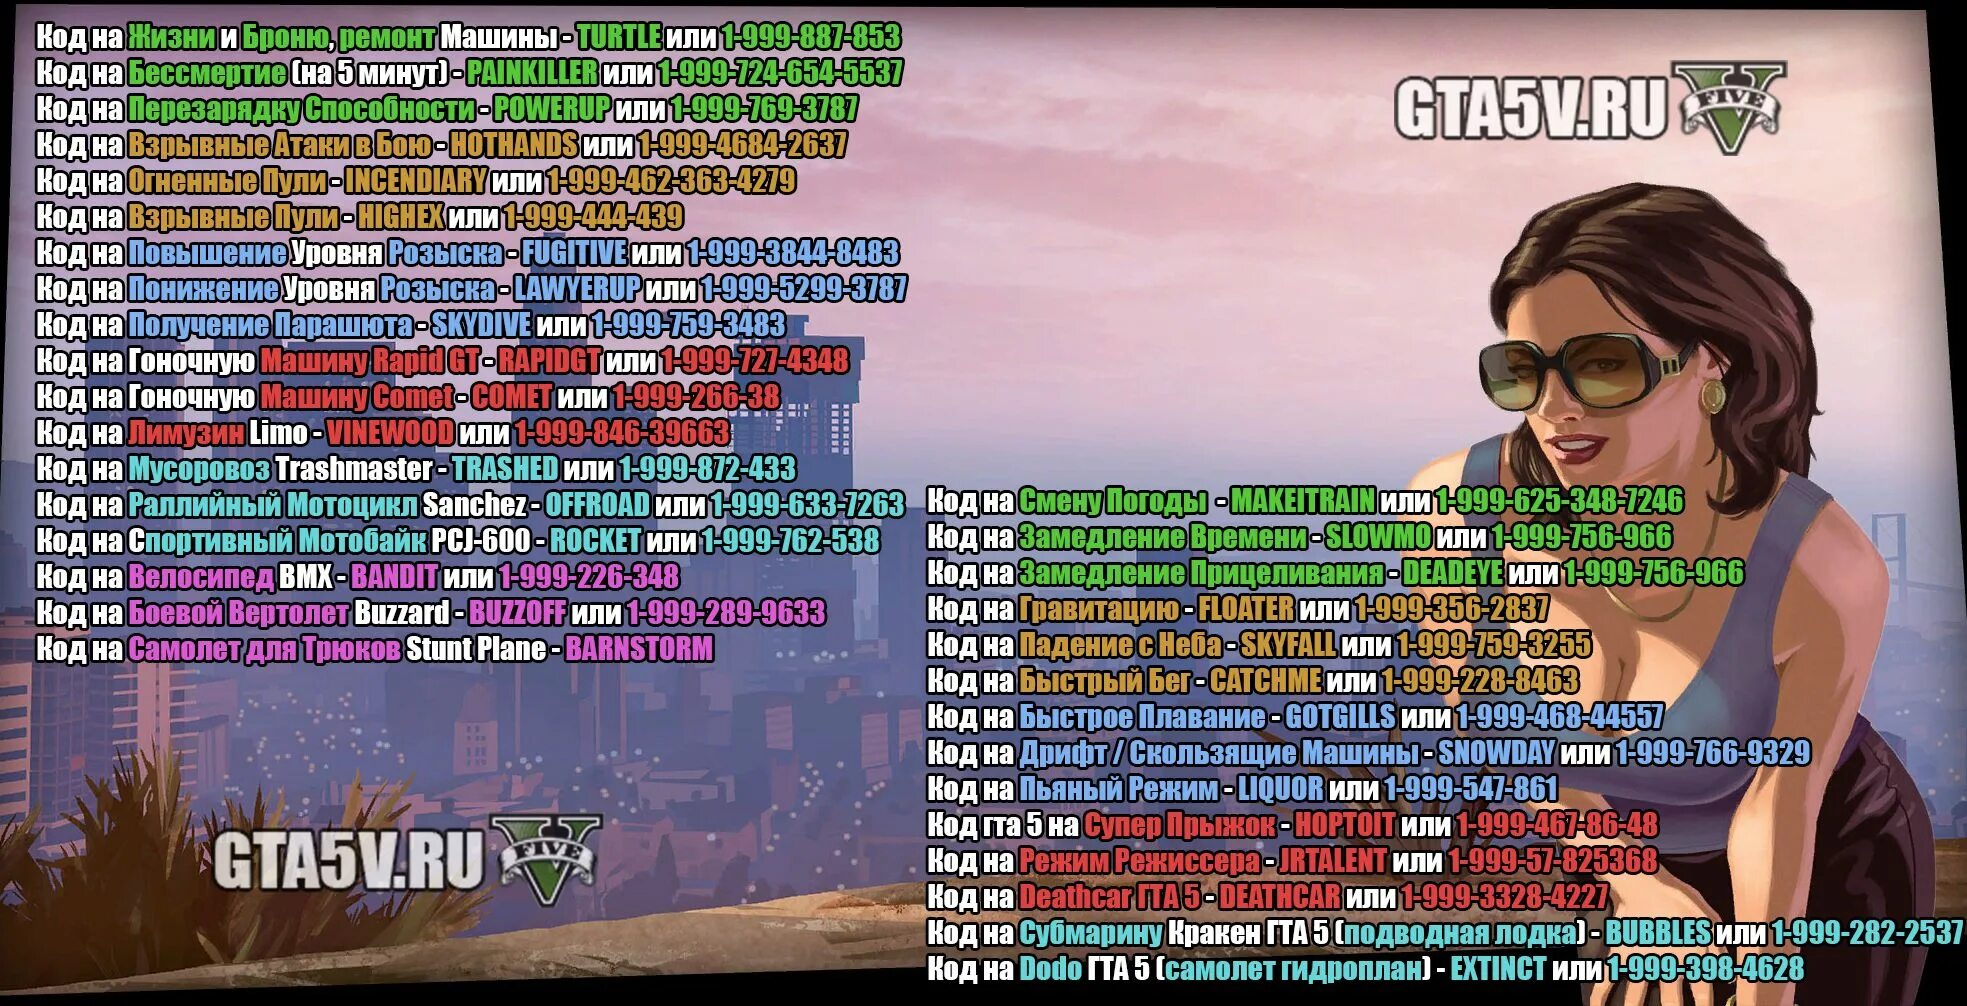 Читы на высадку. Читы на ГТА 5 чит коды на ГТА 5. GTA Grand Theft auto коды 5. Код GTA V код для GTA V. GTA 5 Чита.